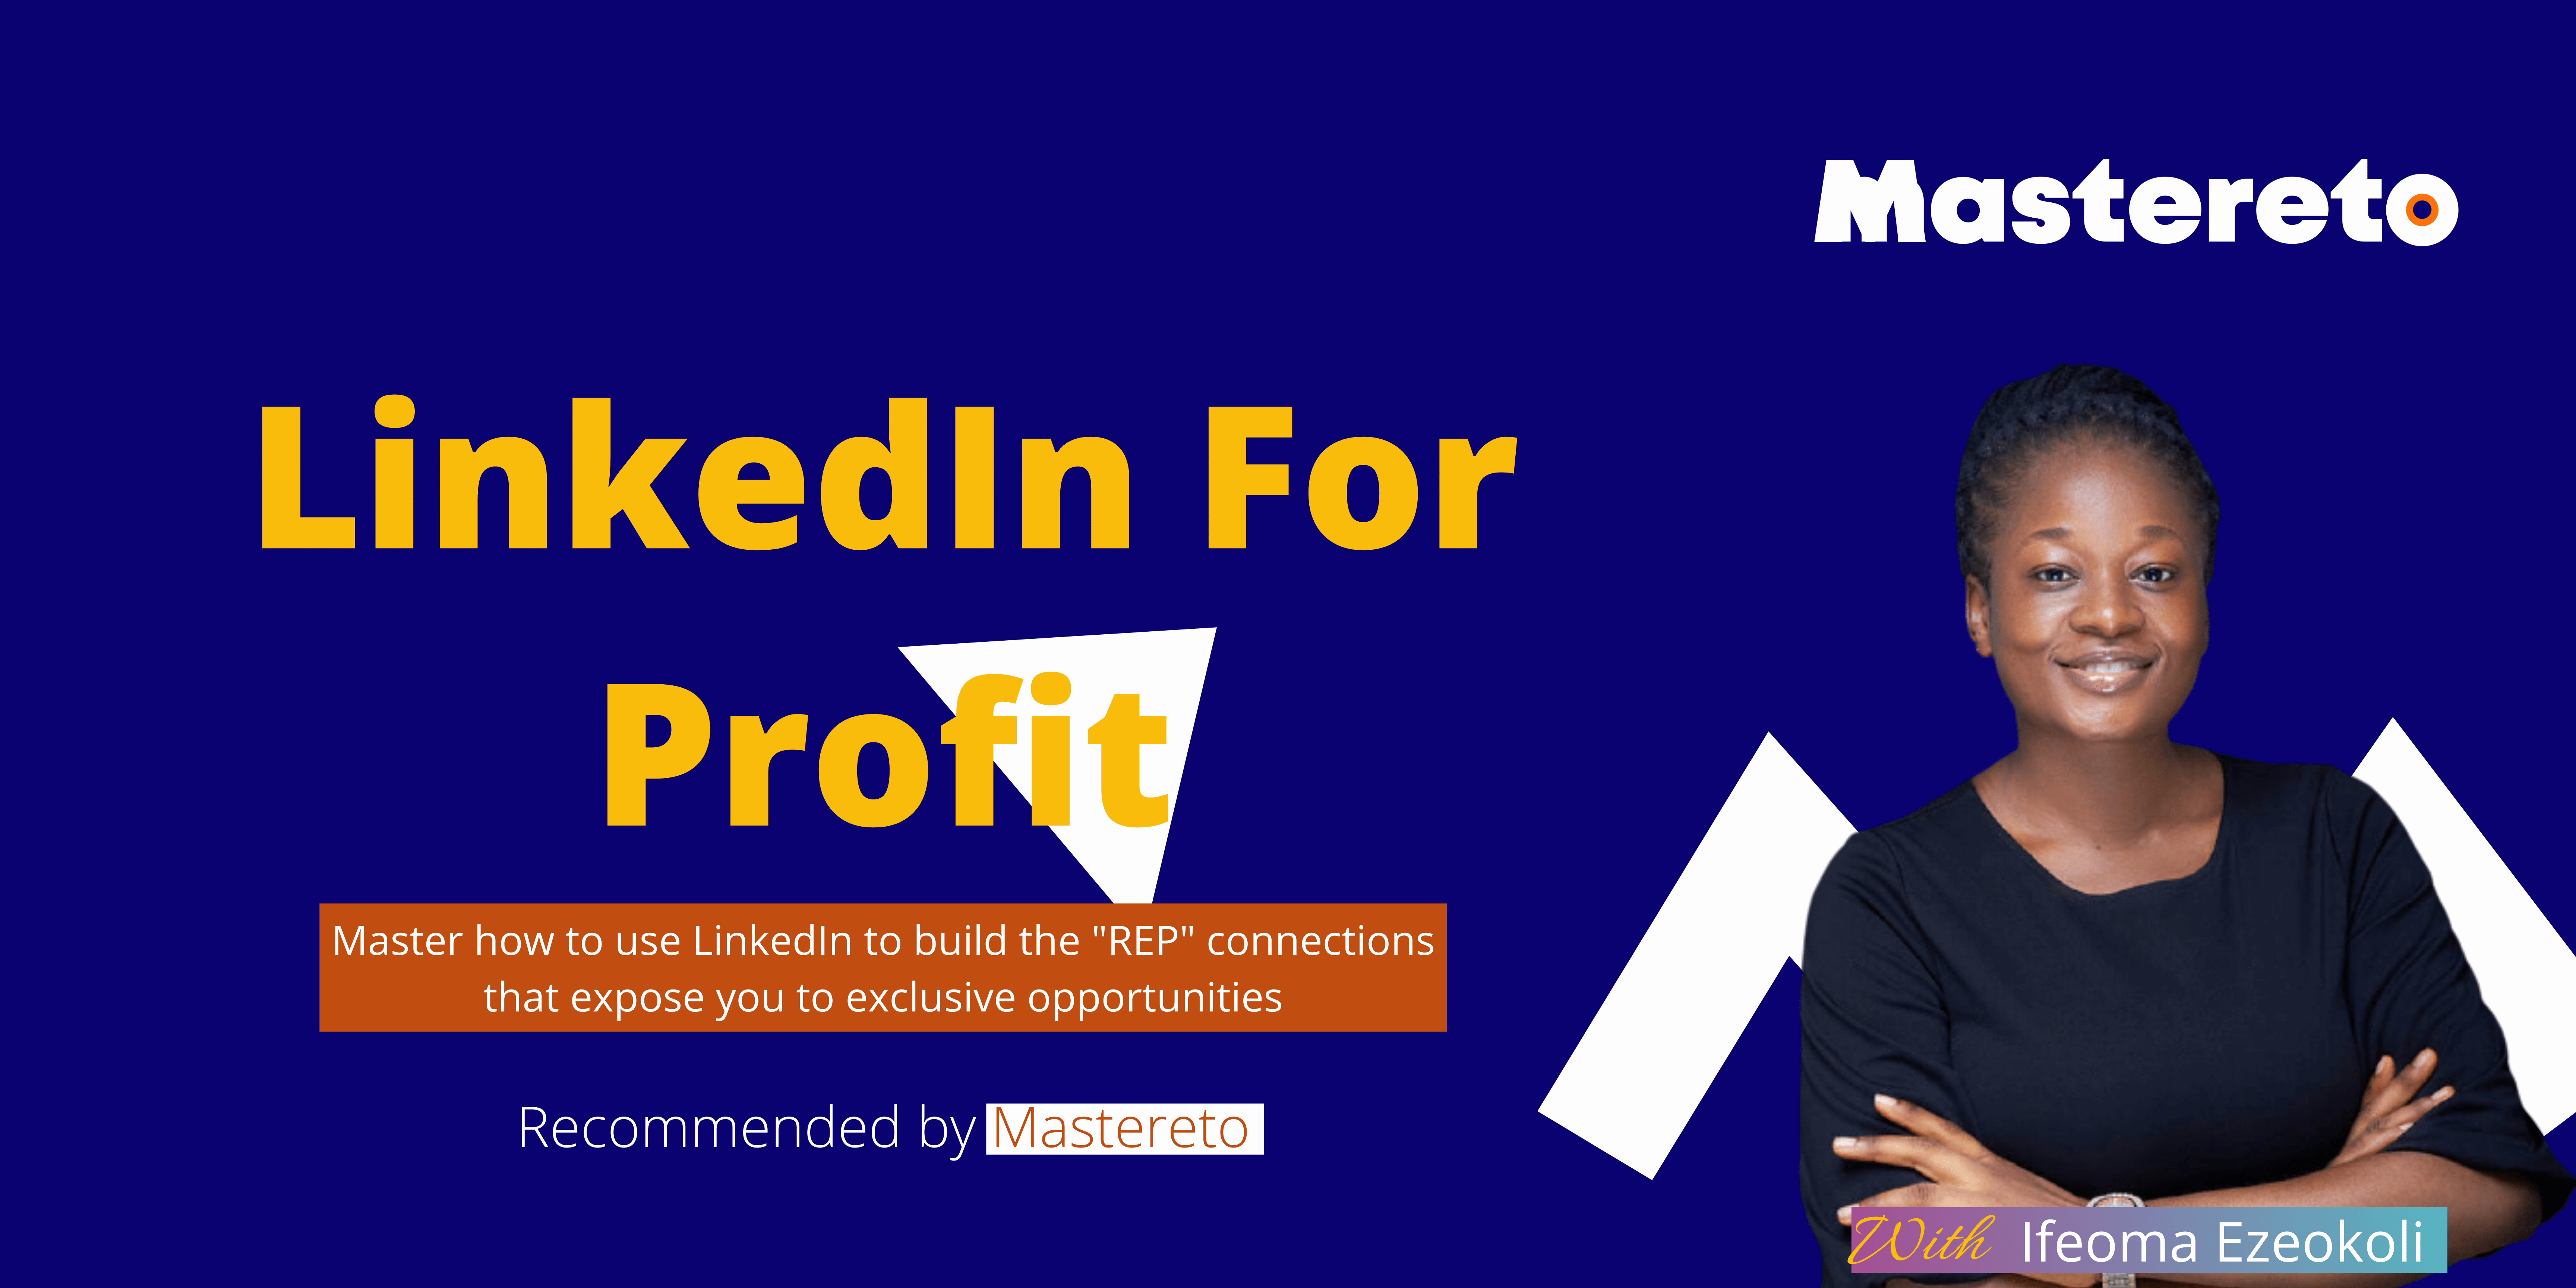 Ifeoma Ezeokoli - LinkedIn For Profit - Mastereto